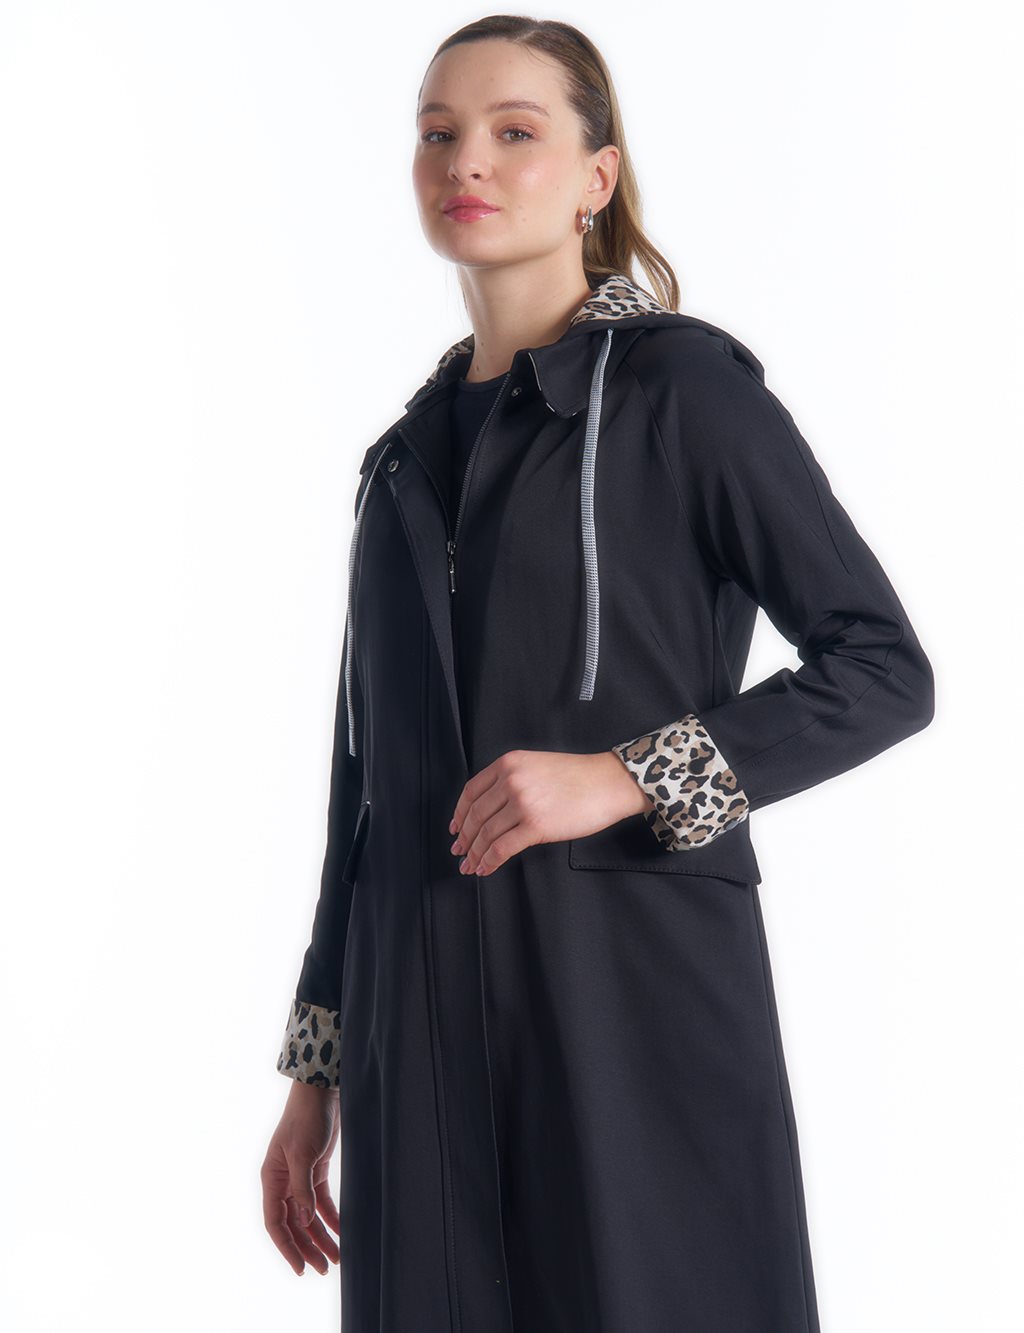  Hidden Snap Zipper and Snap Fastener Overcoat in Black